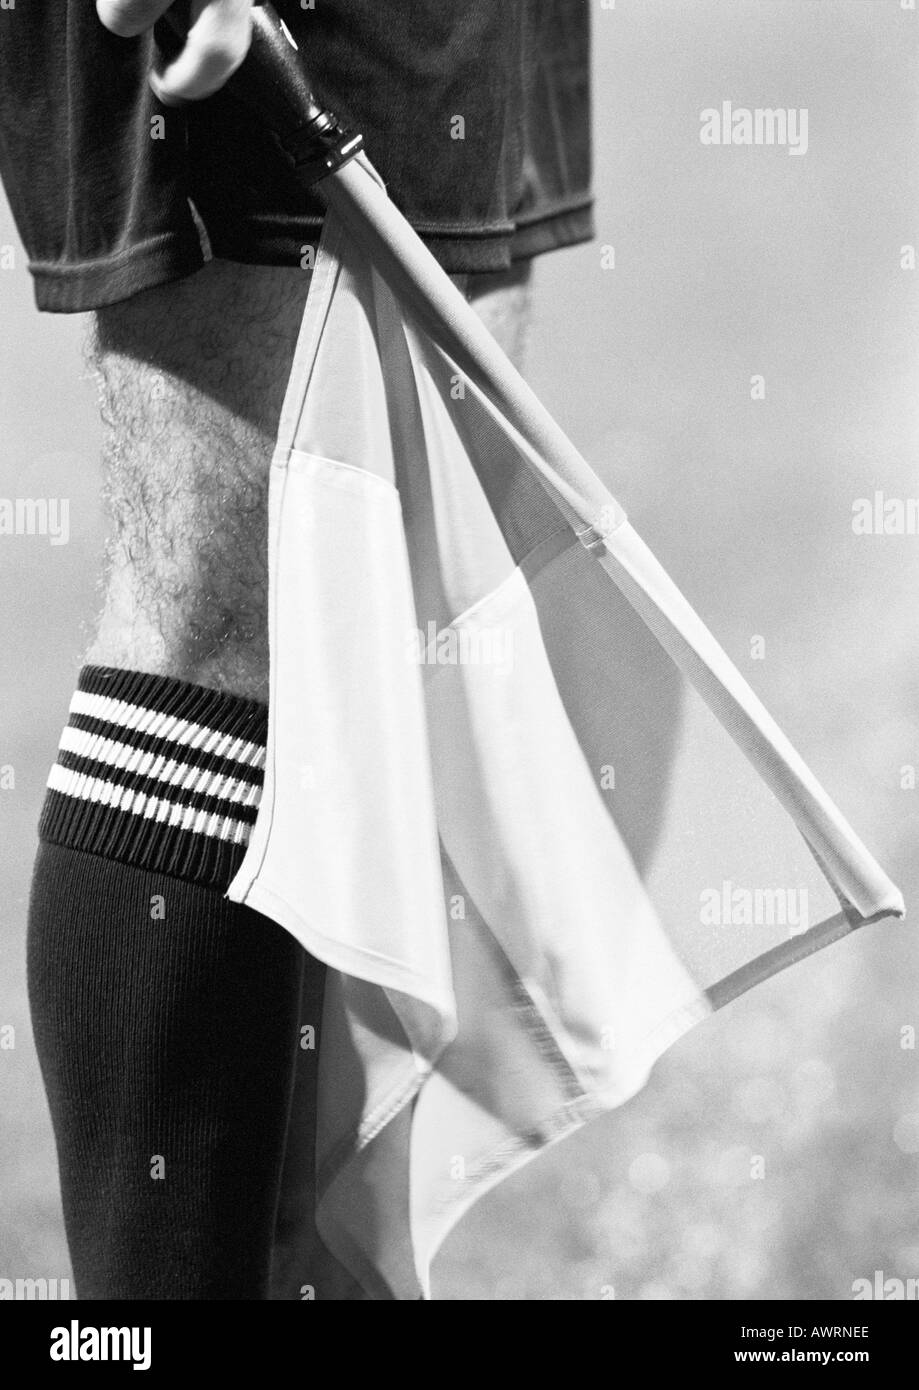 Juge de ligne en match de foot holding drapeau, close-up de jambe et d'un drapeau, b&w. Banque D'Images